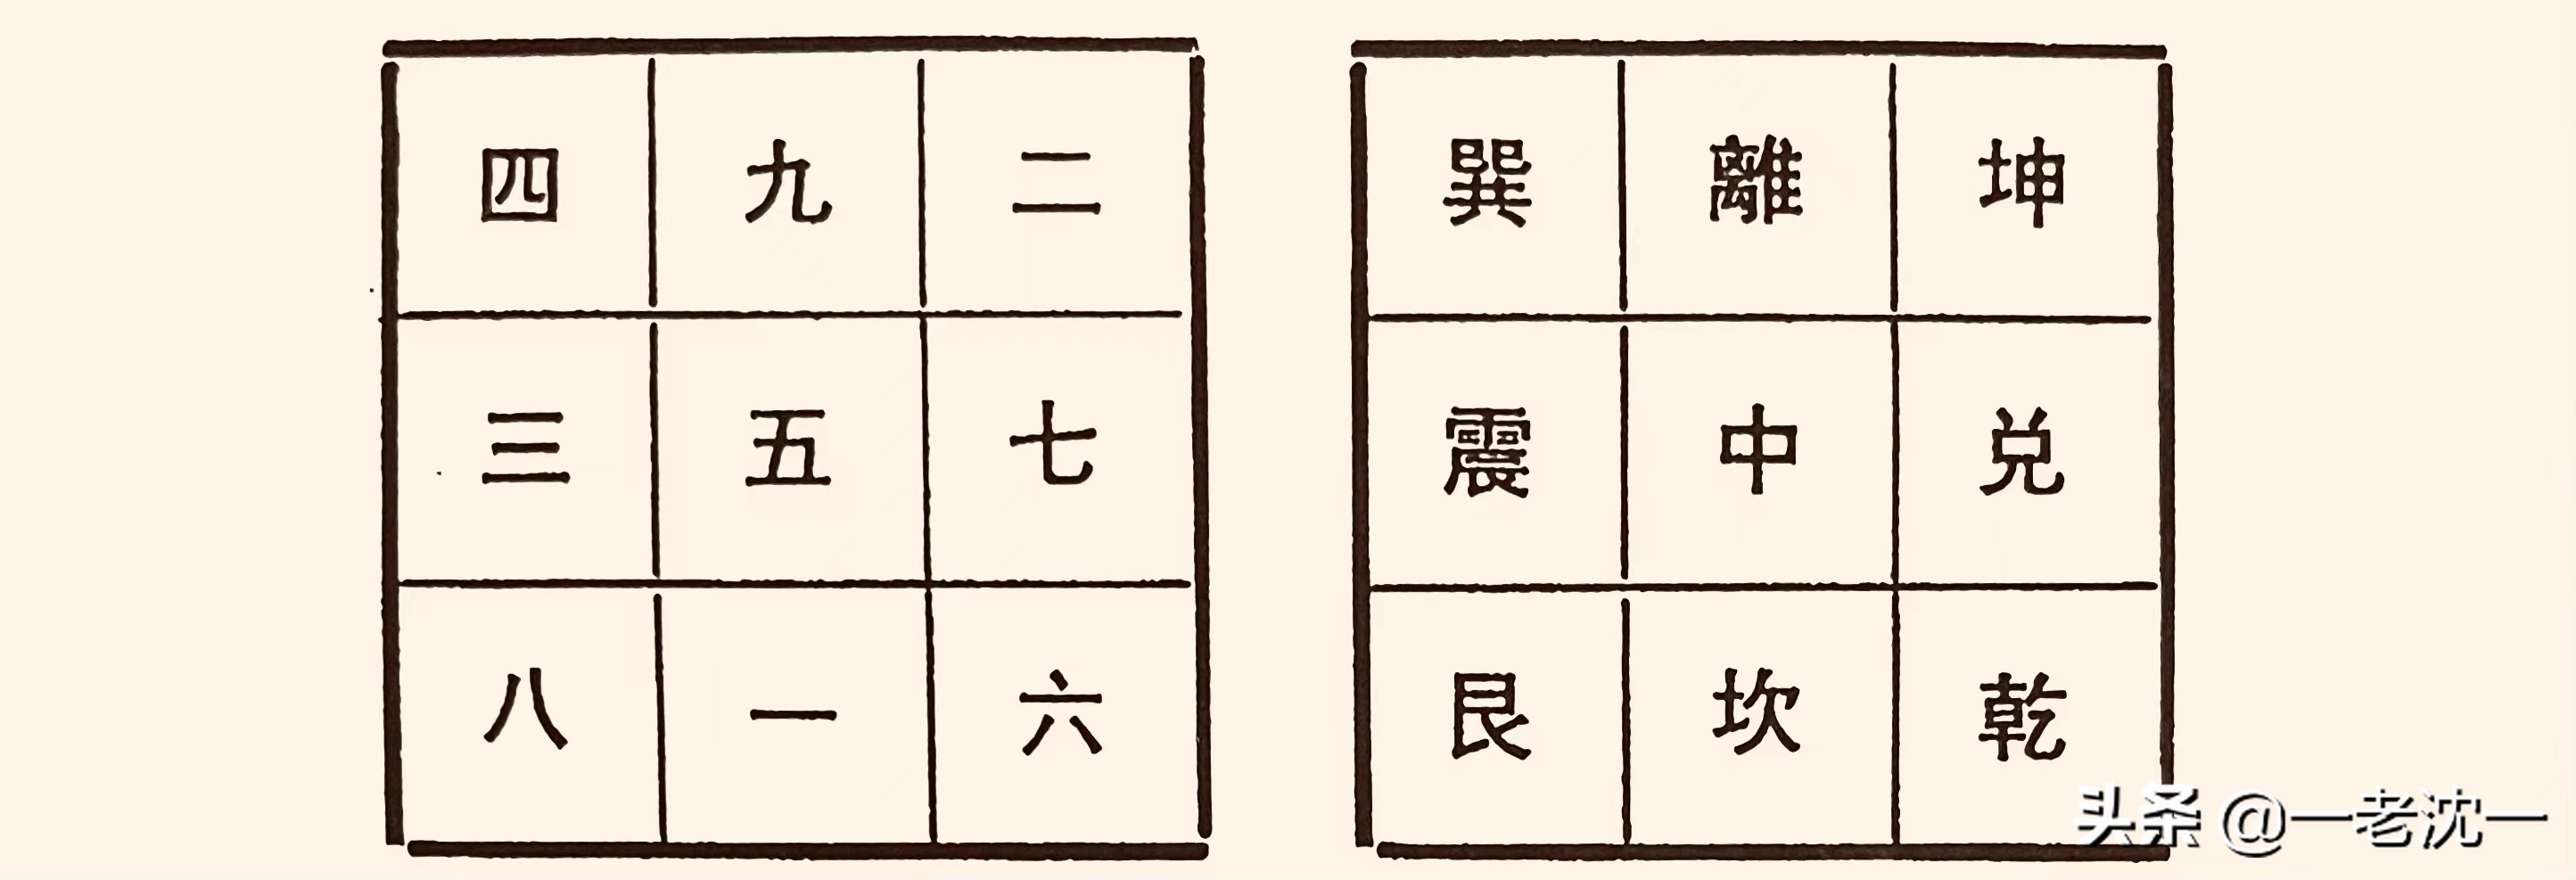 汉字“五”和“午”所蕴含的先民“时空观”和“哲学观”